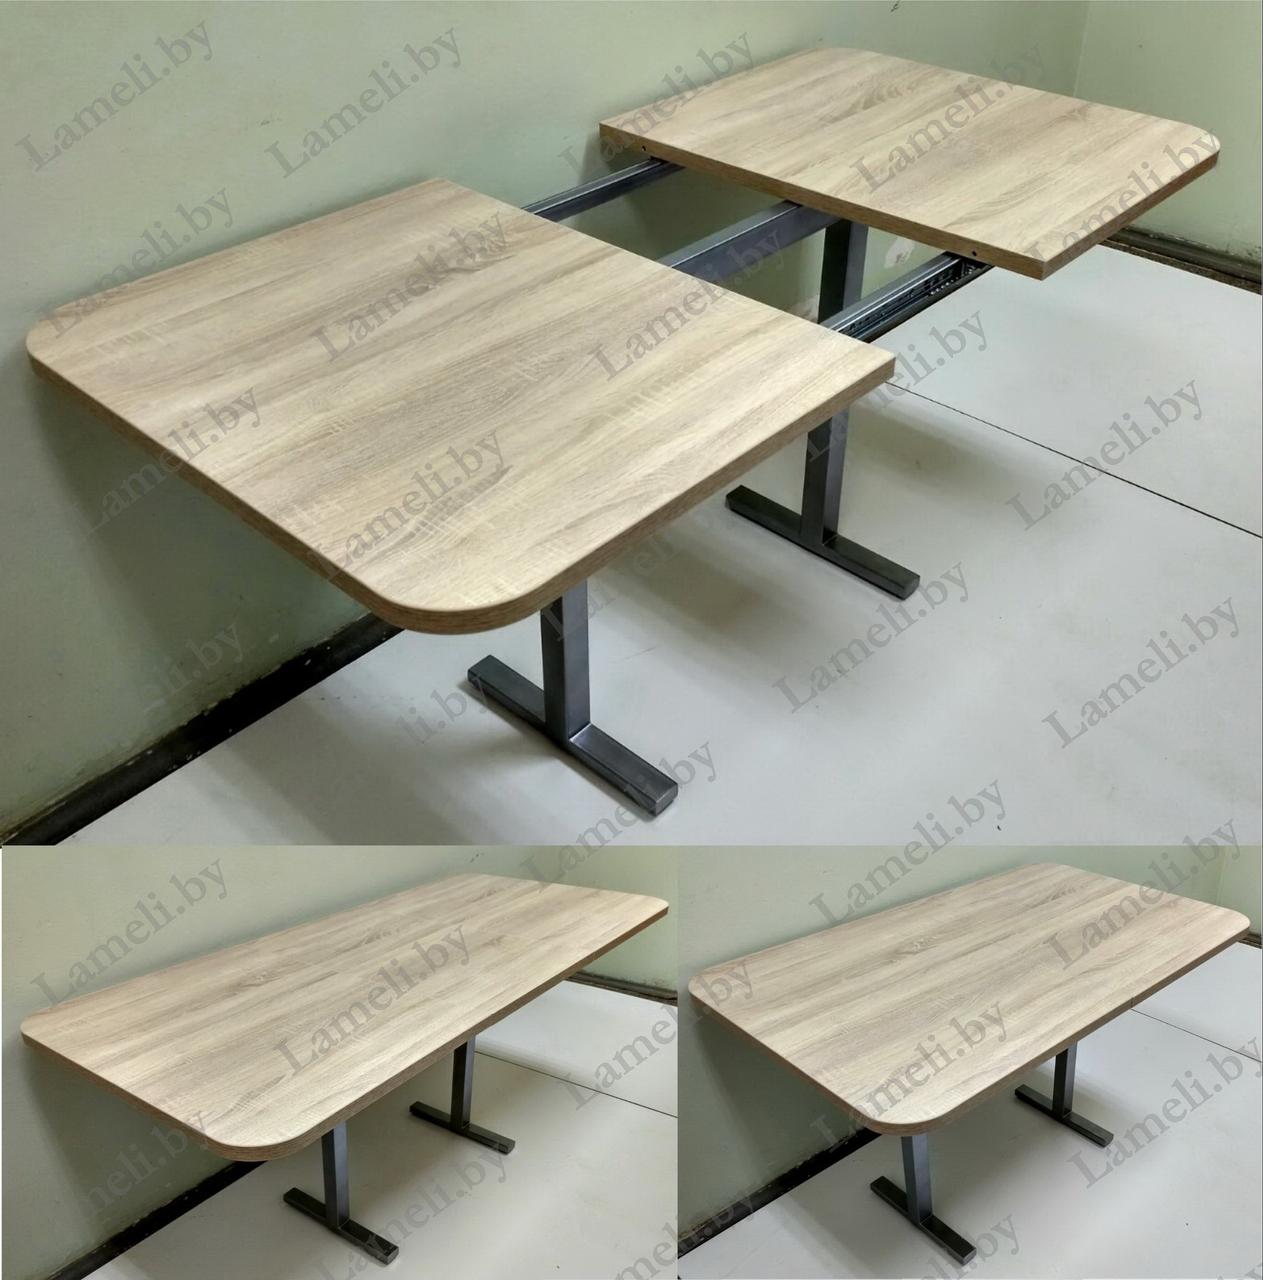 Раздвижной стол из постформинга, ЛДСП или массива дуба на металлокаркасе серии "Н" с выбором цвета и размера, фото 1